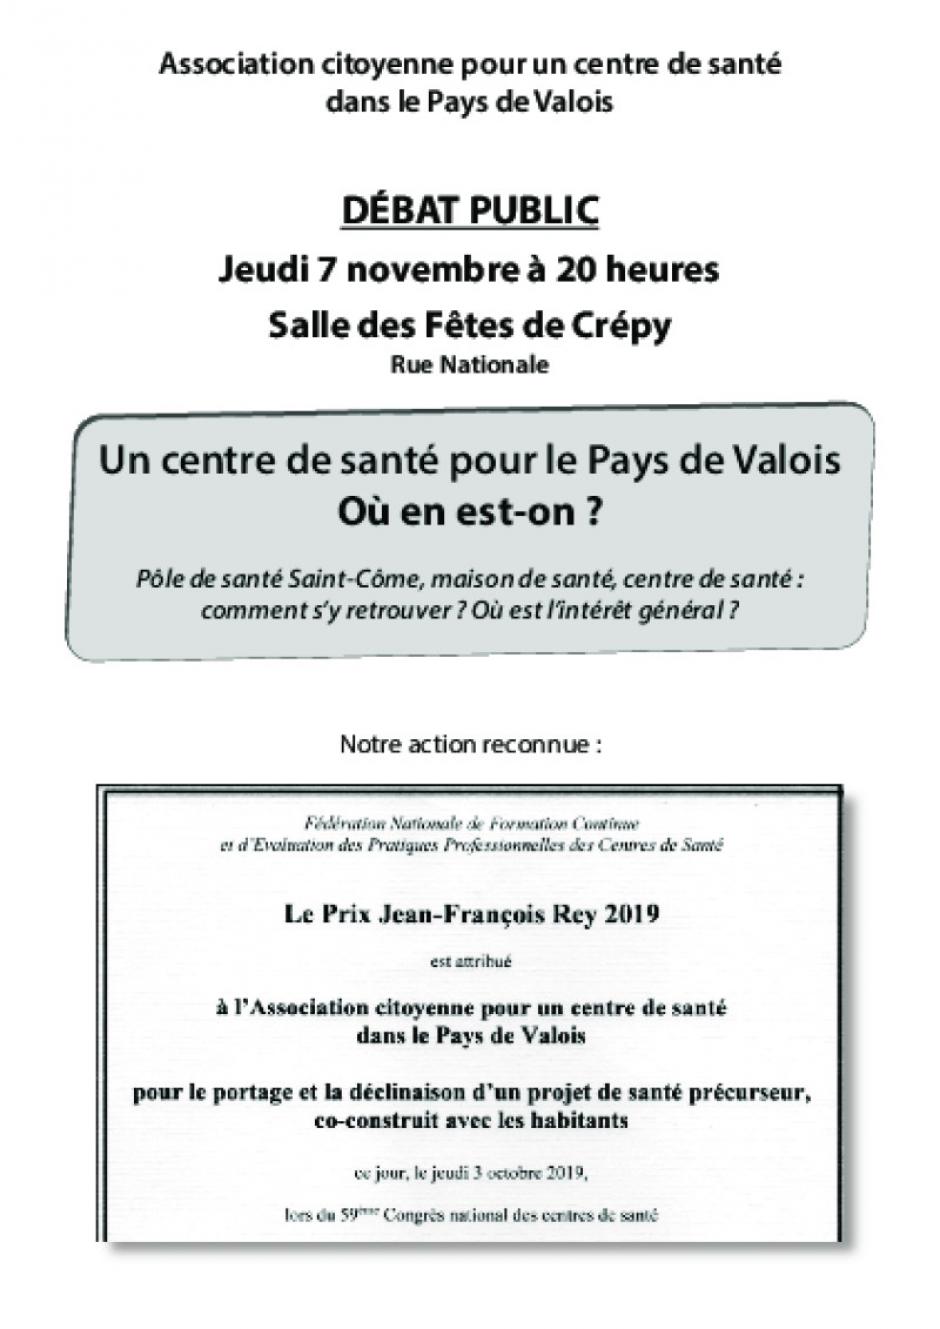 7 novembre, Crépy-en-Valois - Réunion publique « Un centre de santé pour le Pays-de-Valois, où en est-on ? »